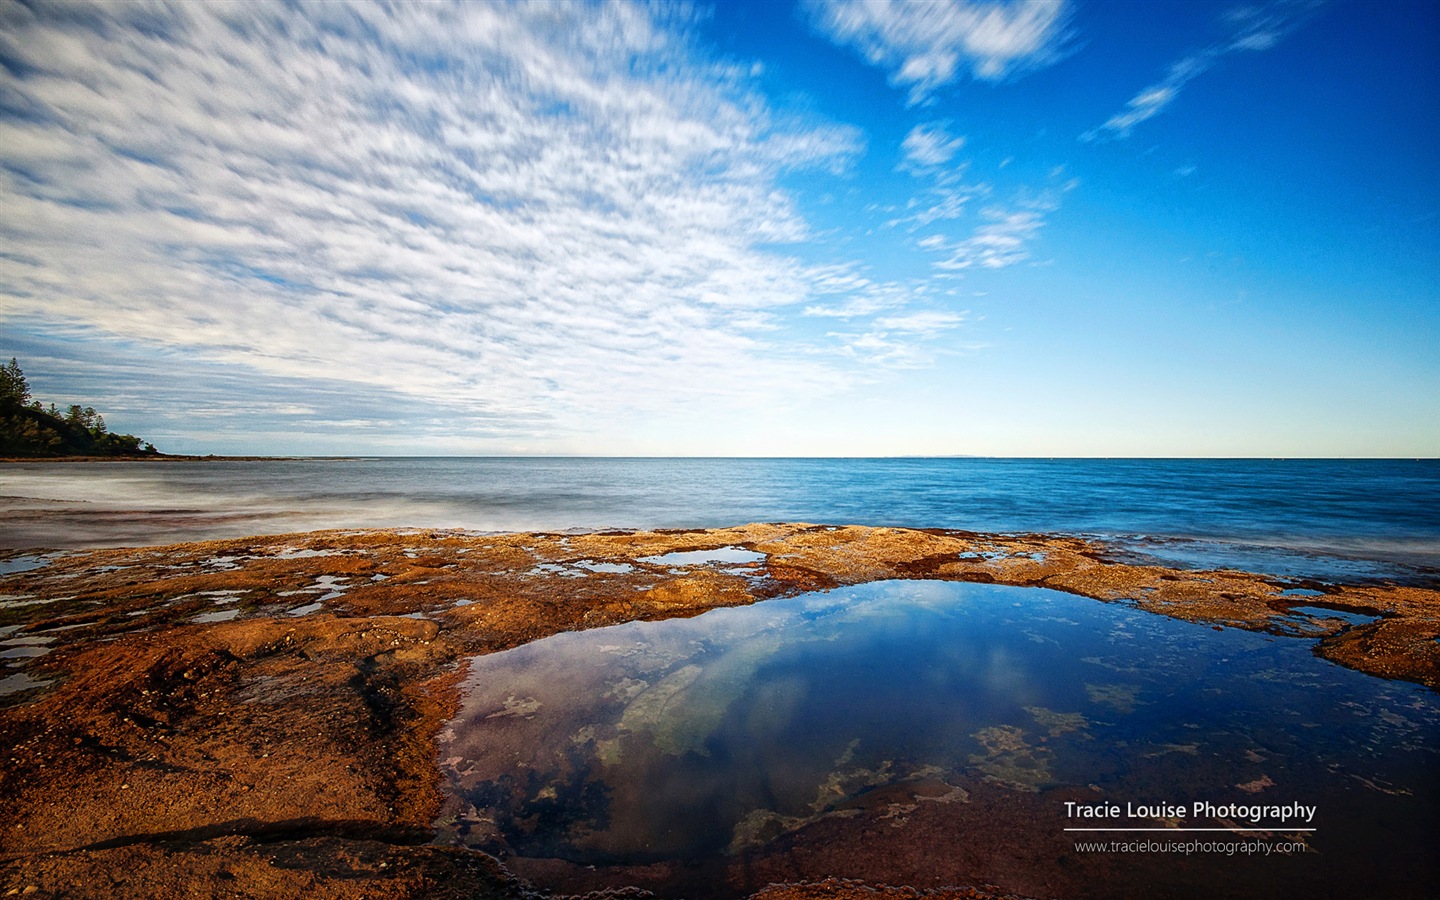 澳大利亚昆士兰州，风景秀丽，Windows 8 主题高清壁纸18 - 1440x900